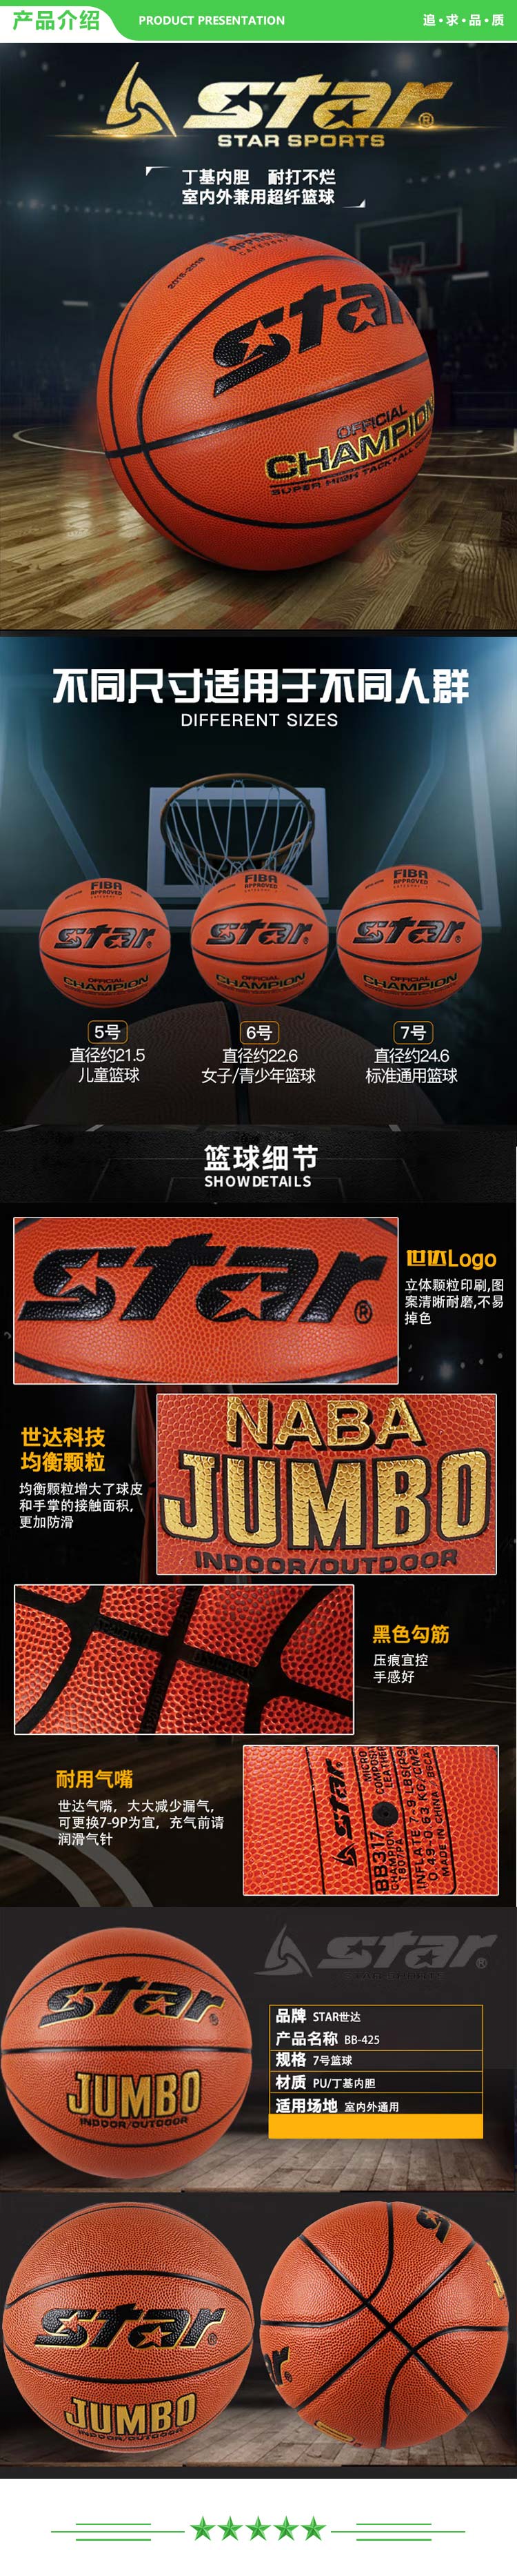 世达 star BB425 篮球5号  PU合成皮革 训练比赛室内外兼备篮球 .jpg